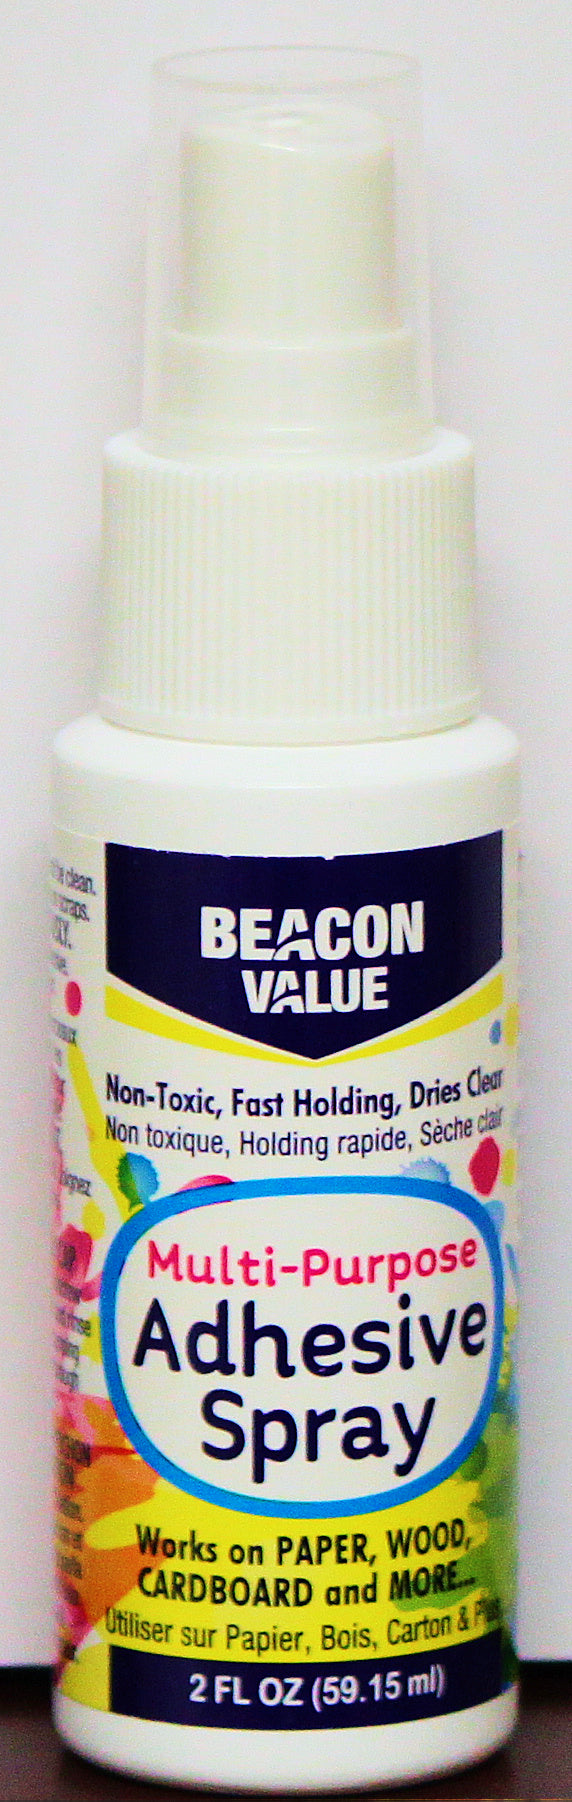 Beacon Value Multi-Purpose Adhesive Spray 2 oz.